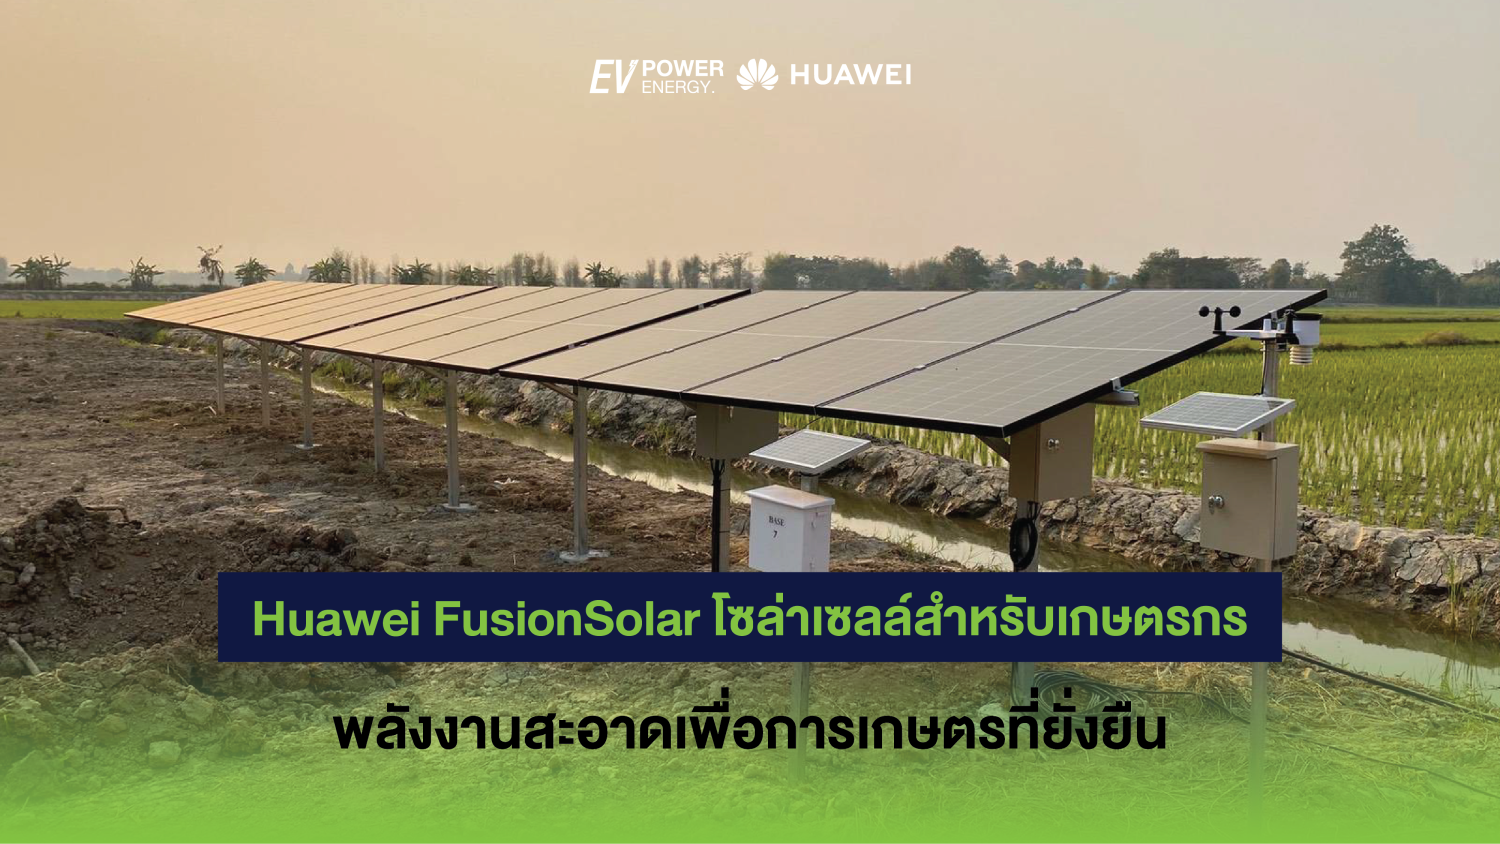 Huawei FusionSolar โซล่าเซลล์สำหรับเกษตรกร พลังงานสะอาดเพื่อการเกษตรที่ยั่งยืน 1